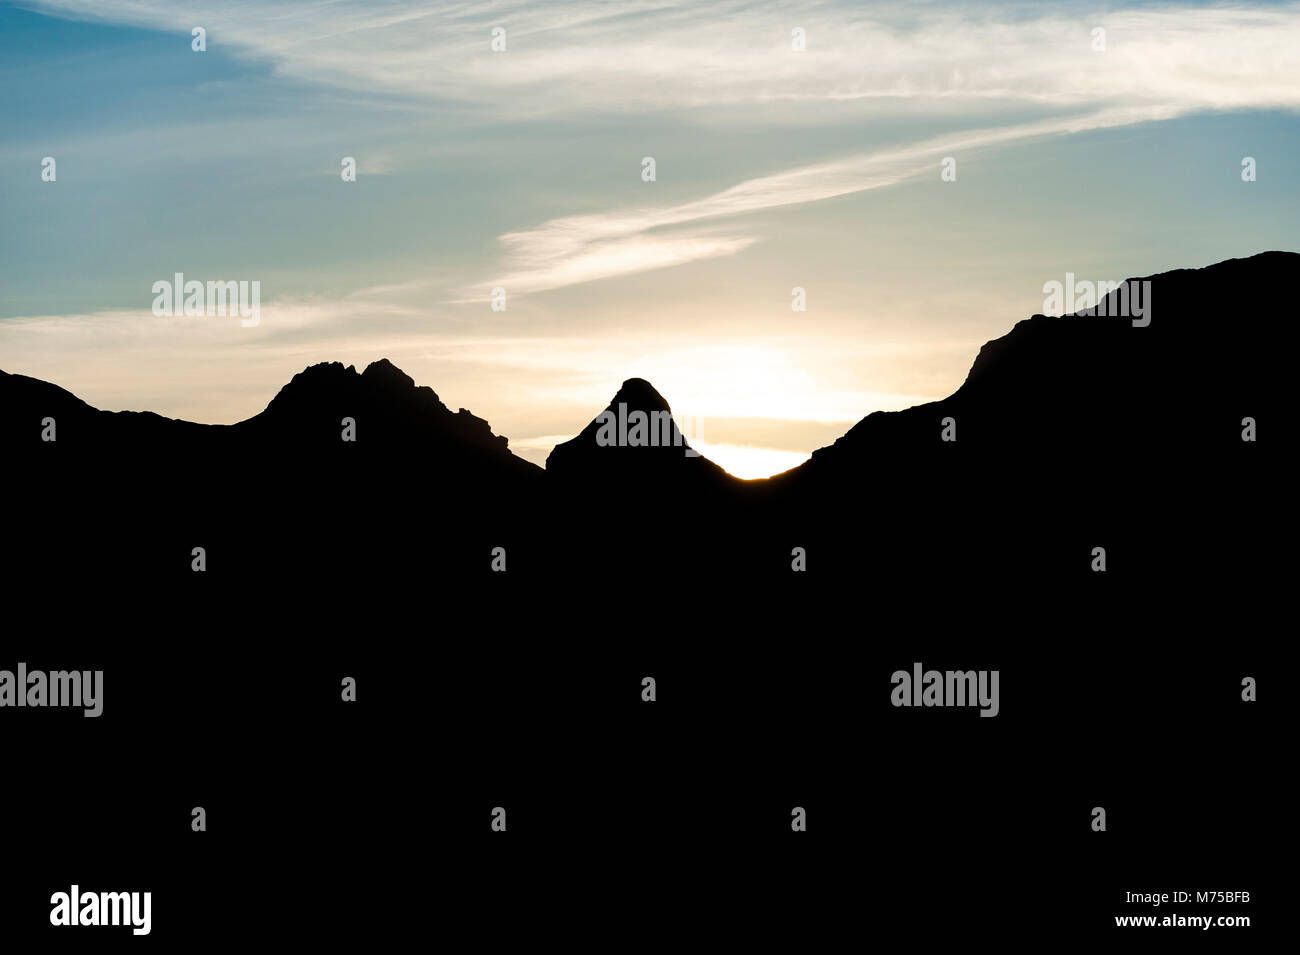 Dunkle schwarze Silhouetten von Durmitor Bergspitzen nach Sonnenuntergang mit dem letzten Licht und bunten Wolken im Himmel Stockfoto